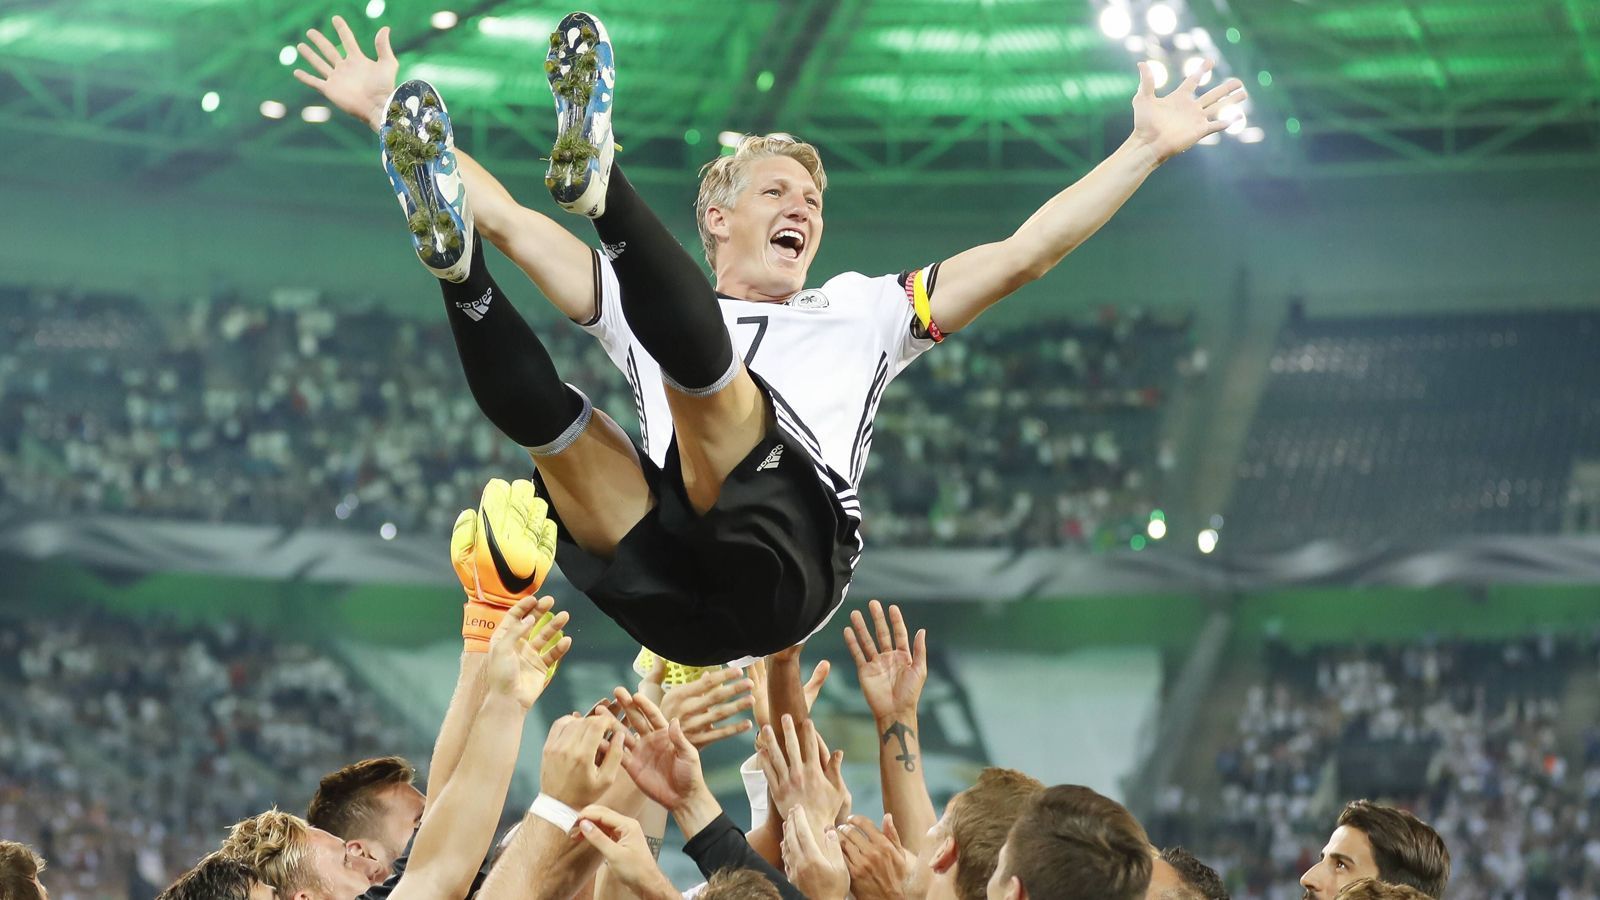 
                <strong>DFB-Abschied</strong><br>
                Nach der sportlich nicht so guten EM 2016 erklärt Schweinsteiger seinen Rücktritt aus der Nationalmannschaft. Er bekommt noch ein Abschiedsspiel und wird von seinen Teamkollegen gefeiert. Der Bayer kommt insgesamt auf 121 Länderspiele (24 Tore).
              